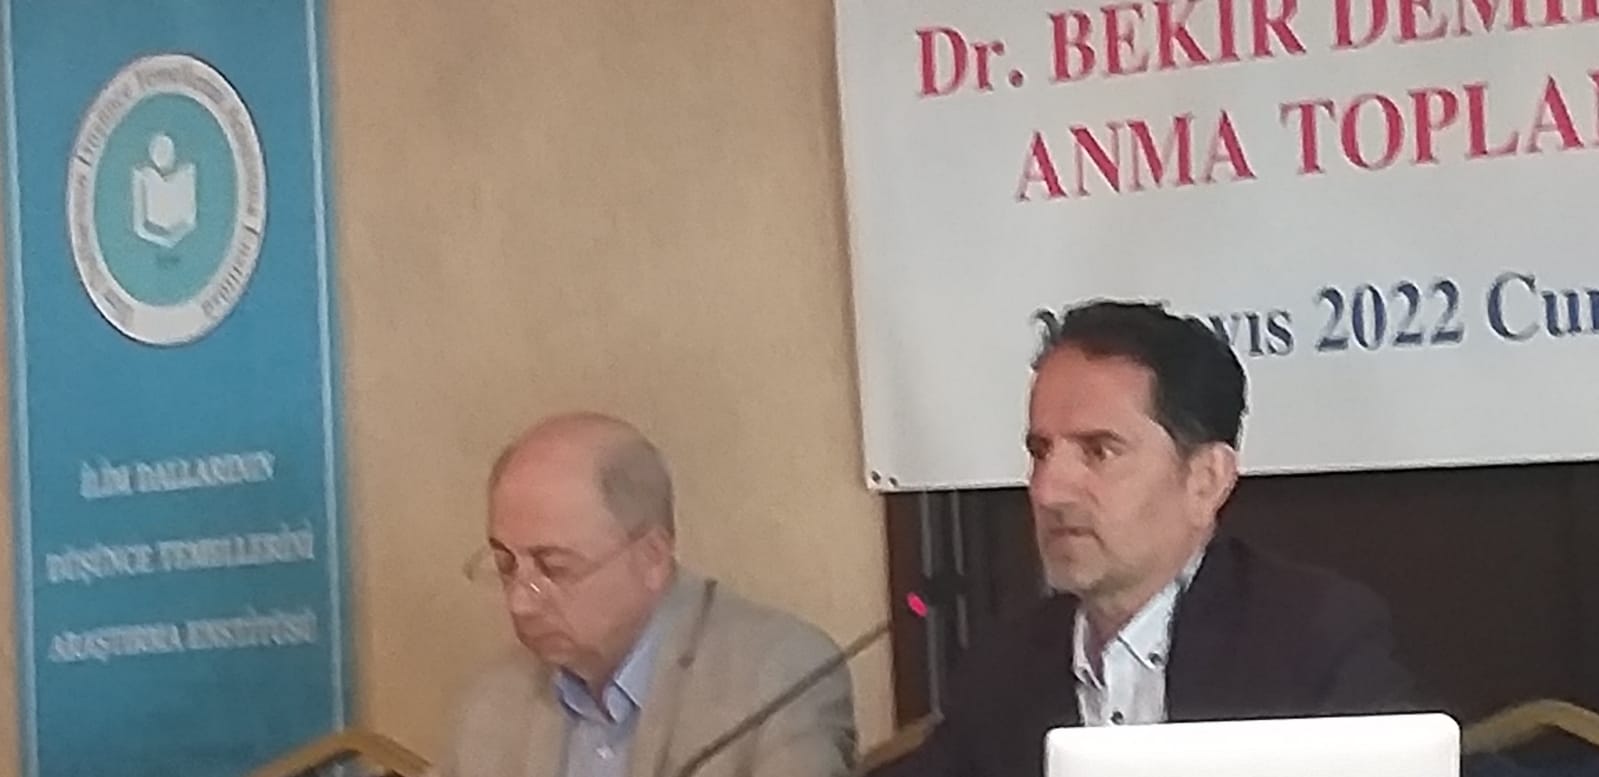 Dr. Bekir Demirkol'u Anma Toplantısı -28.05.2022-